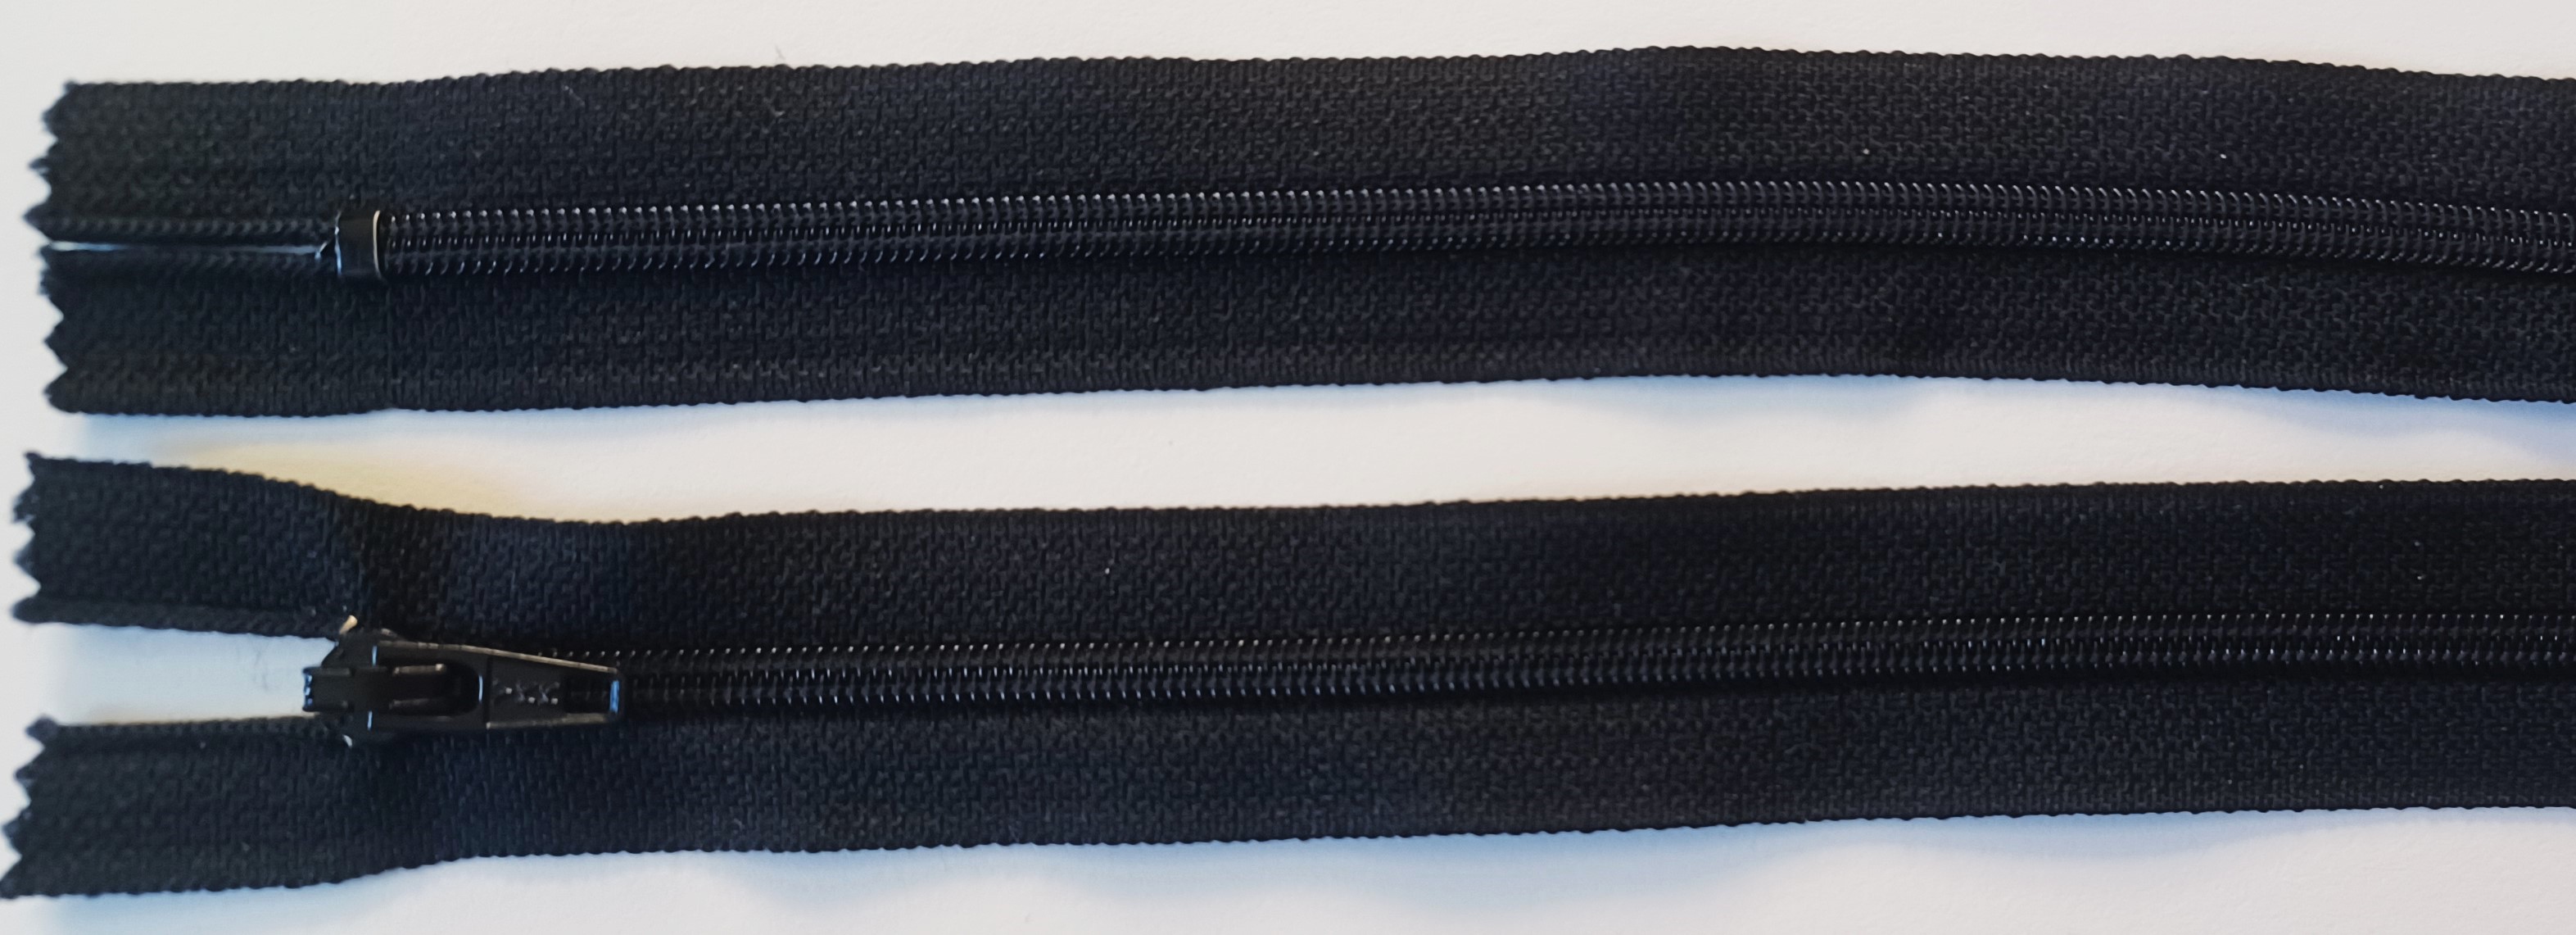 Black YKK 6.5" Zipper